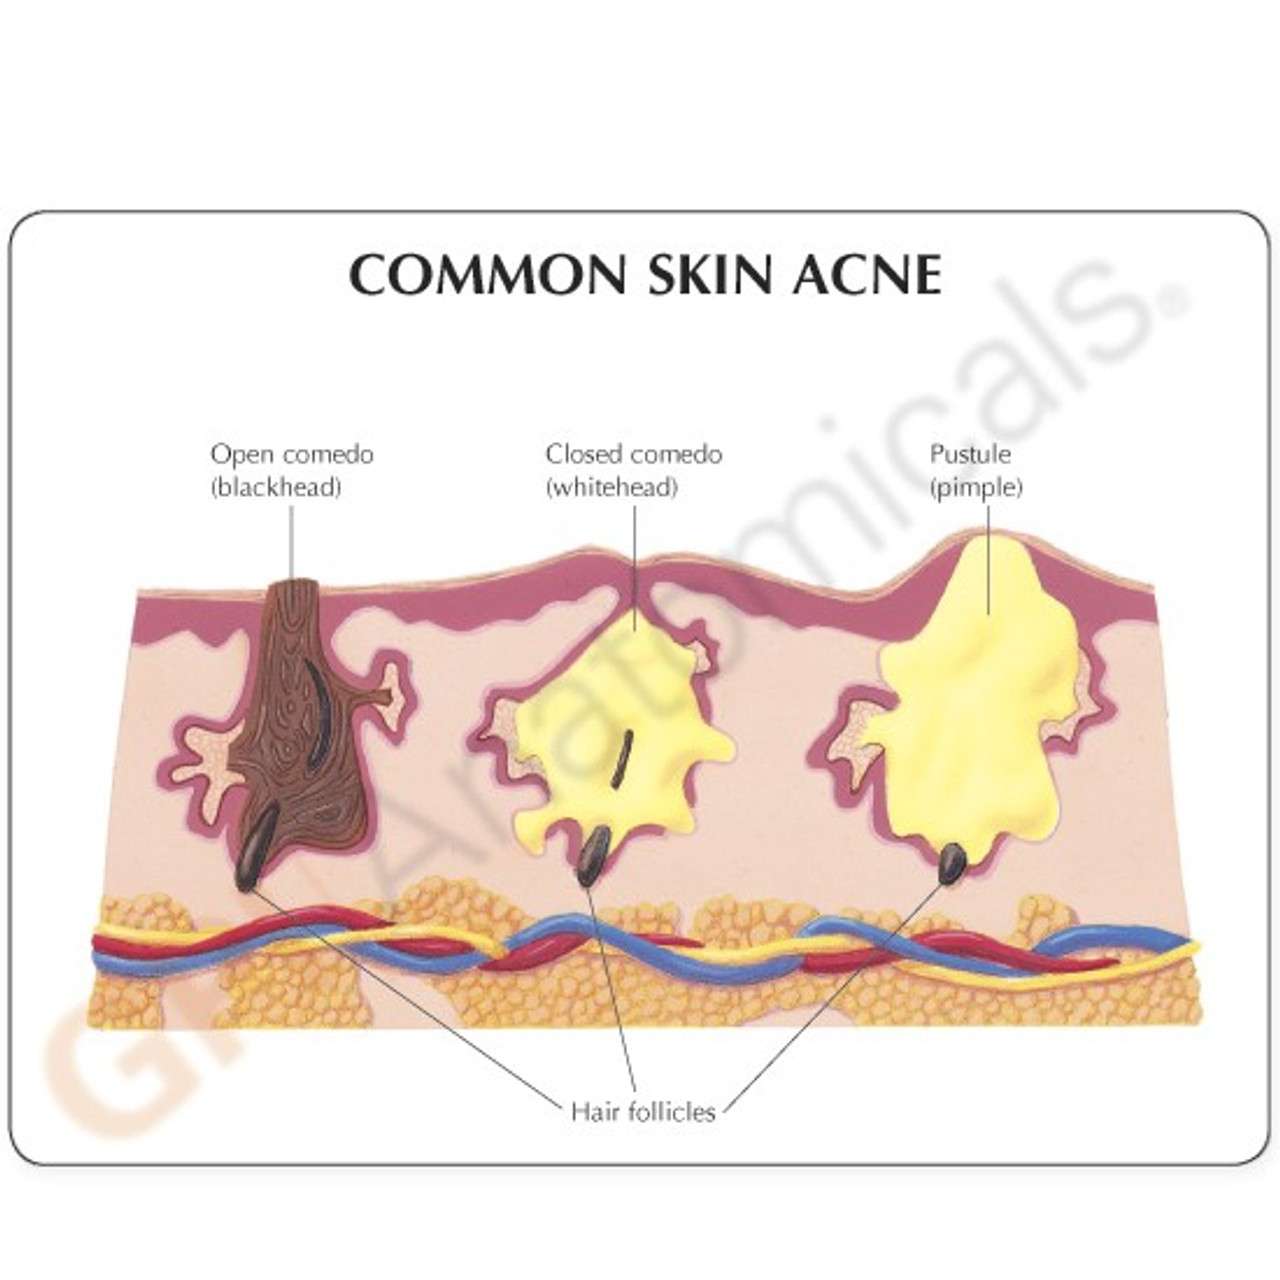 Pimple Under Skin Diagram